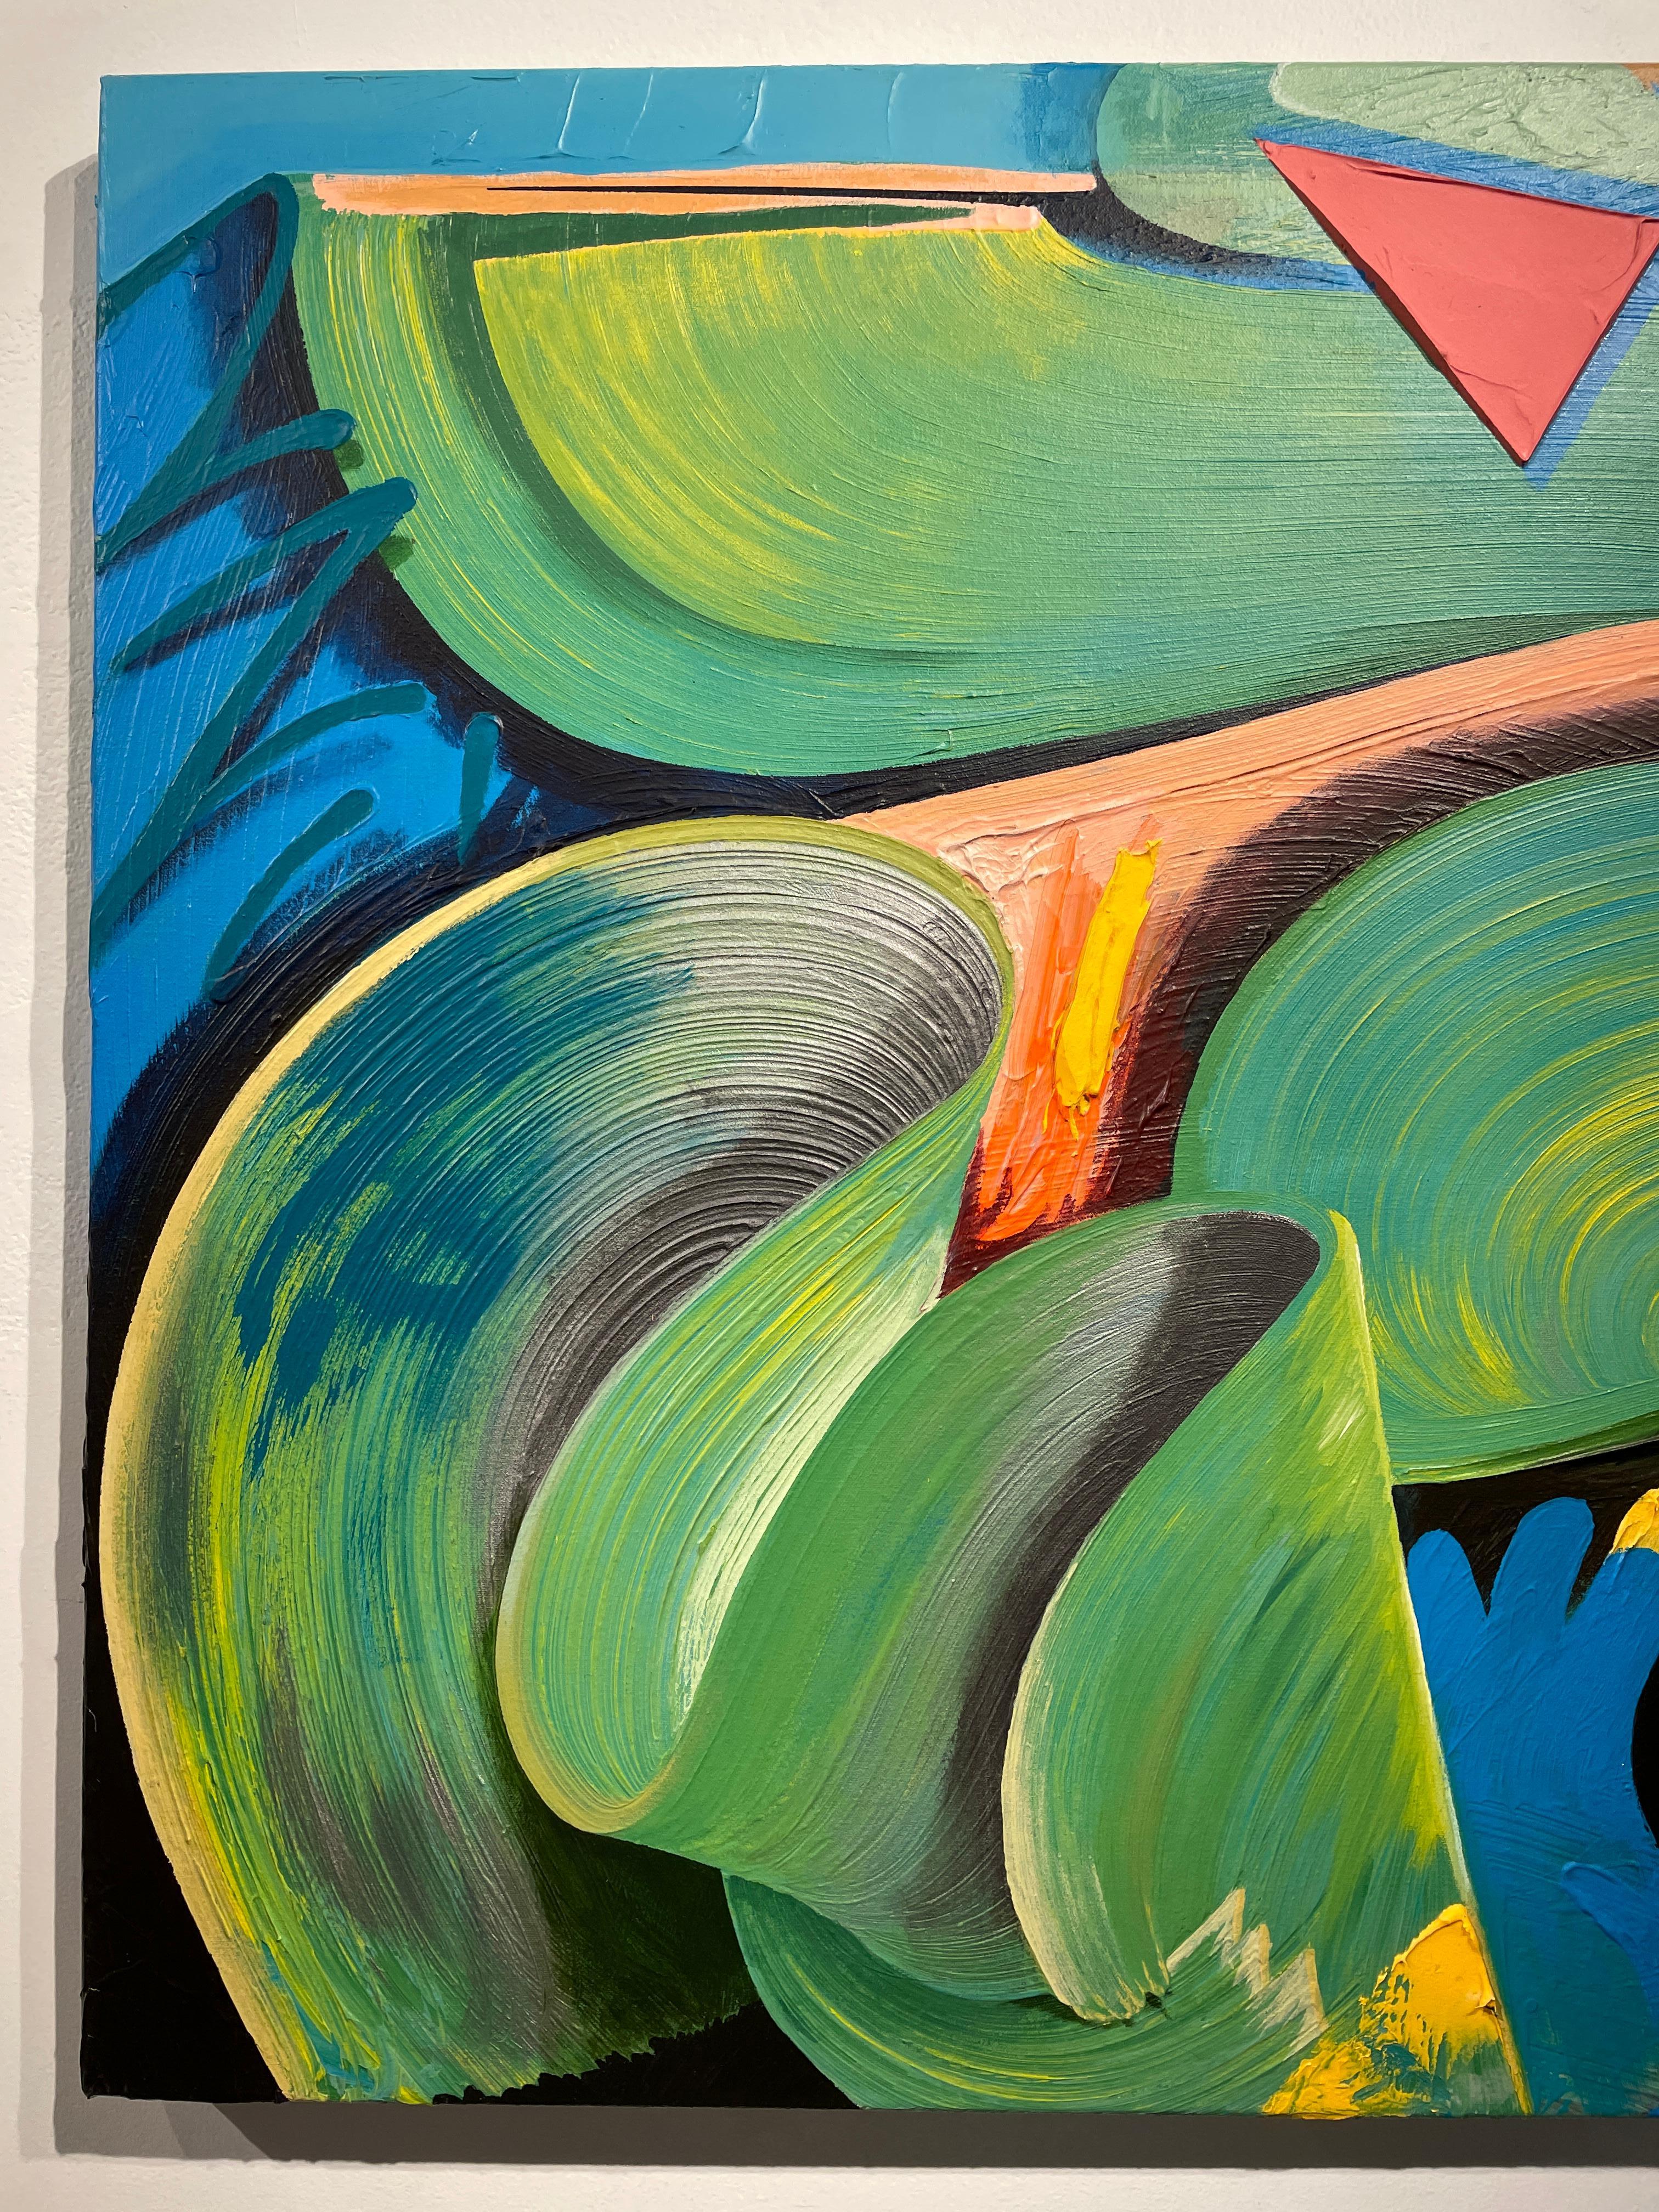  Maitri - Peinture abstraite de style graffiti bouddhiste en bleus et verts vifs - Painting de Connor Hughes